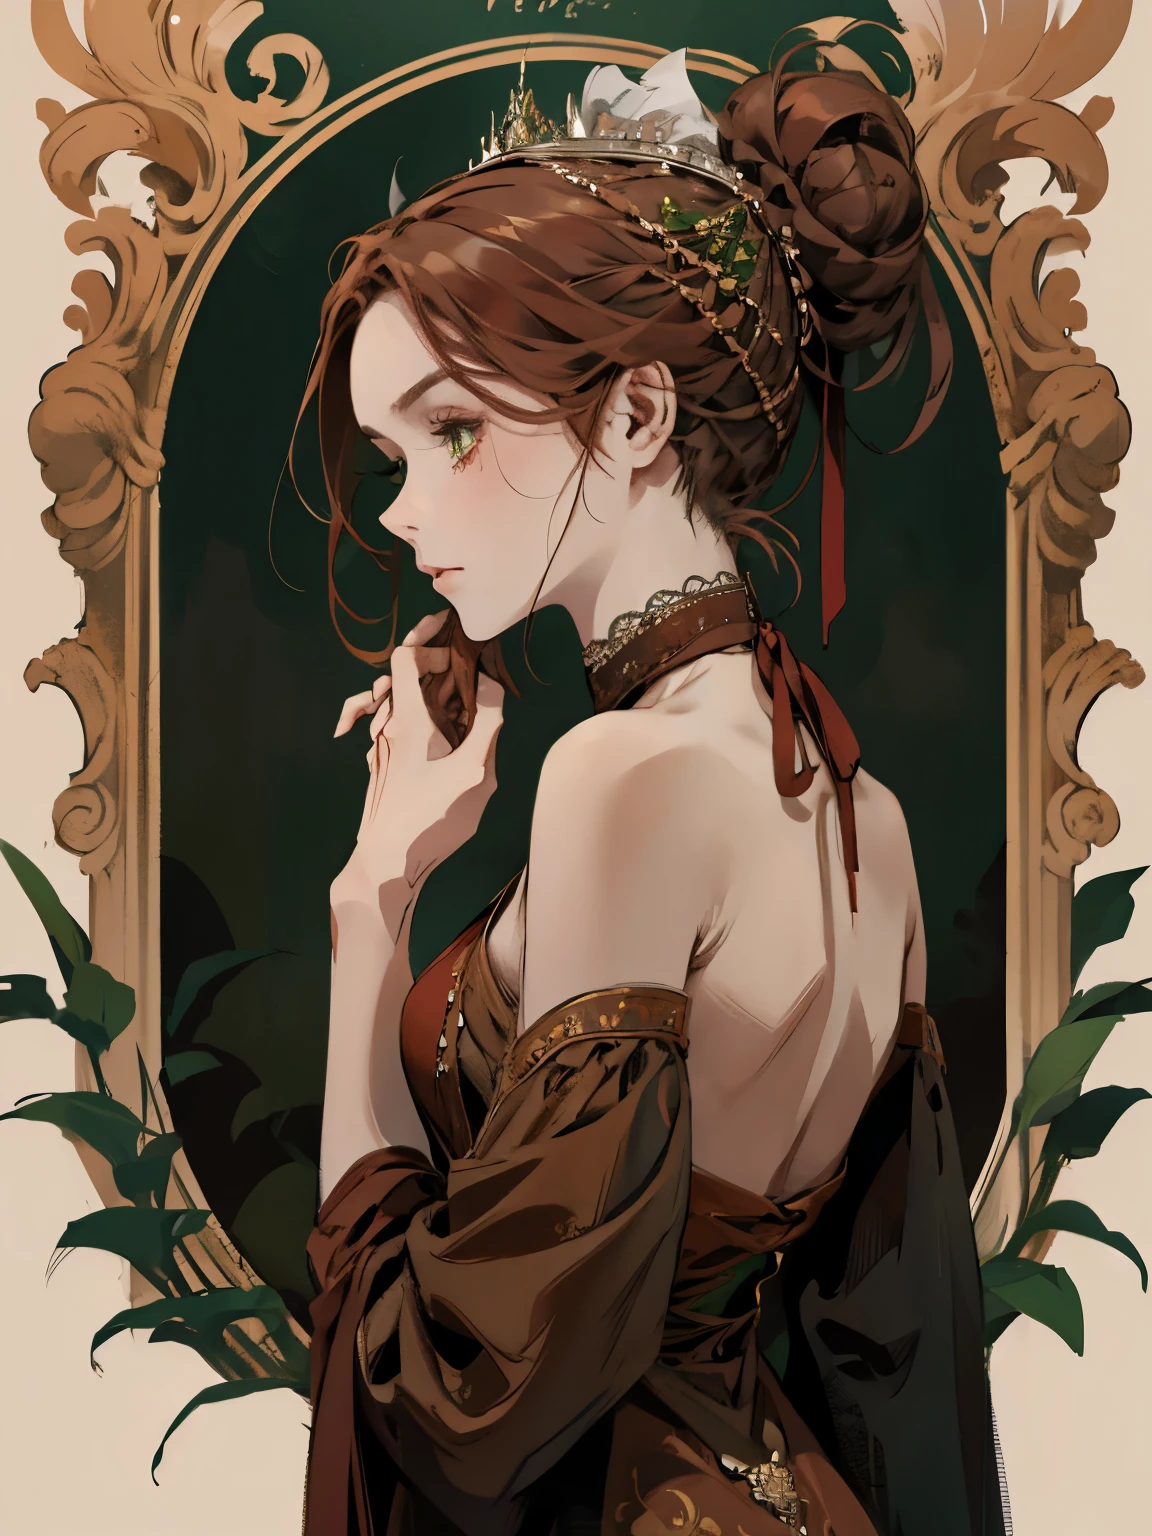 Один, , цифровая картина женщины с волосами, завязанными в пучок, каштановые рыжие волосы, зеленые глаза, молодая дворянка 1800-х годов , спокойное лицо, Вытянутое лицо, смотрит вниз, темно-красное платье, ((платье длиной до шеи)), ткань, прикрывающие плечи, украшения на голову вокруг волос в портретном стиле, глядя, в красивом и зеленом саду